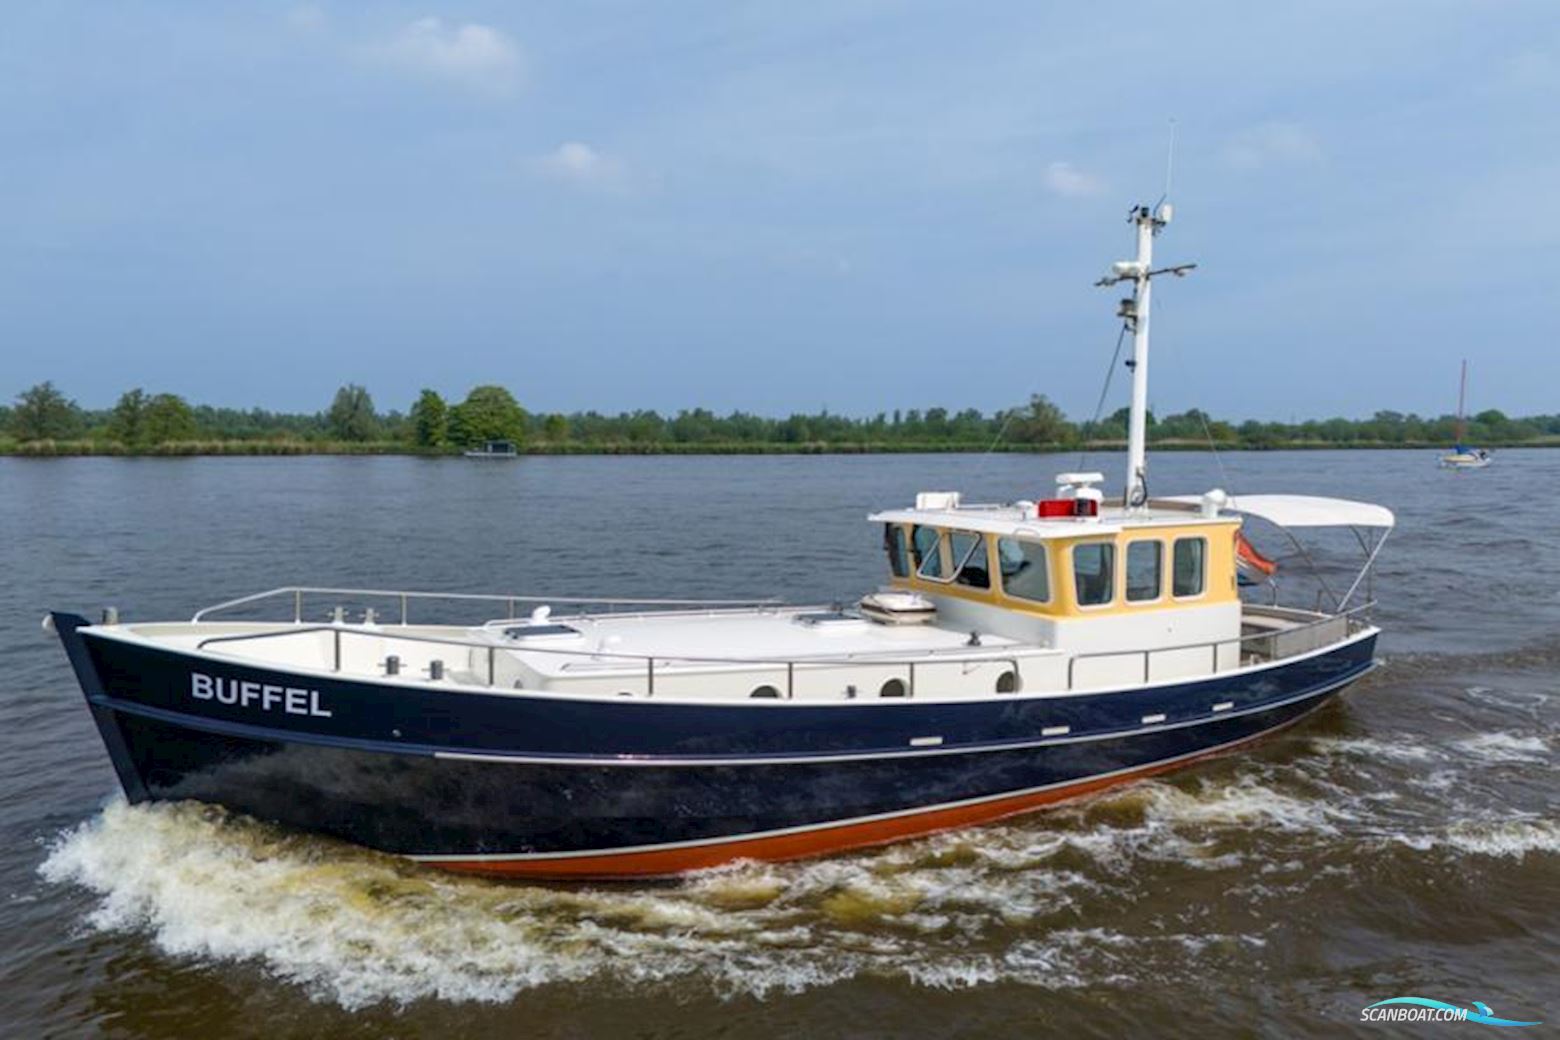 Bekebrede 1300 Motorboot 2000, mit Perkins 130 pk. motor, Niederlande